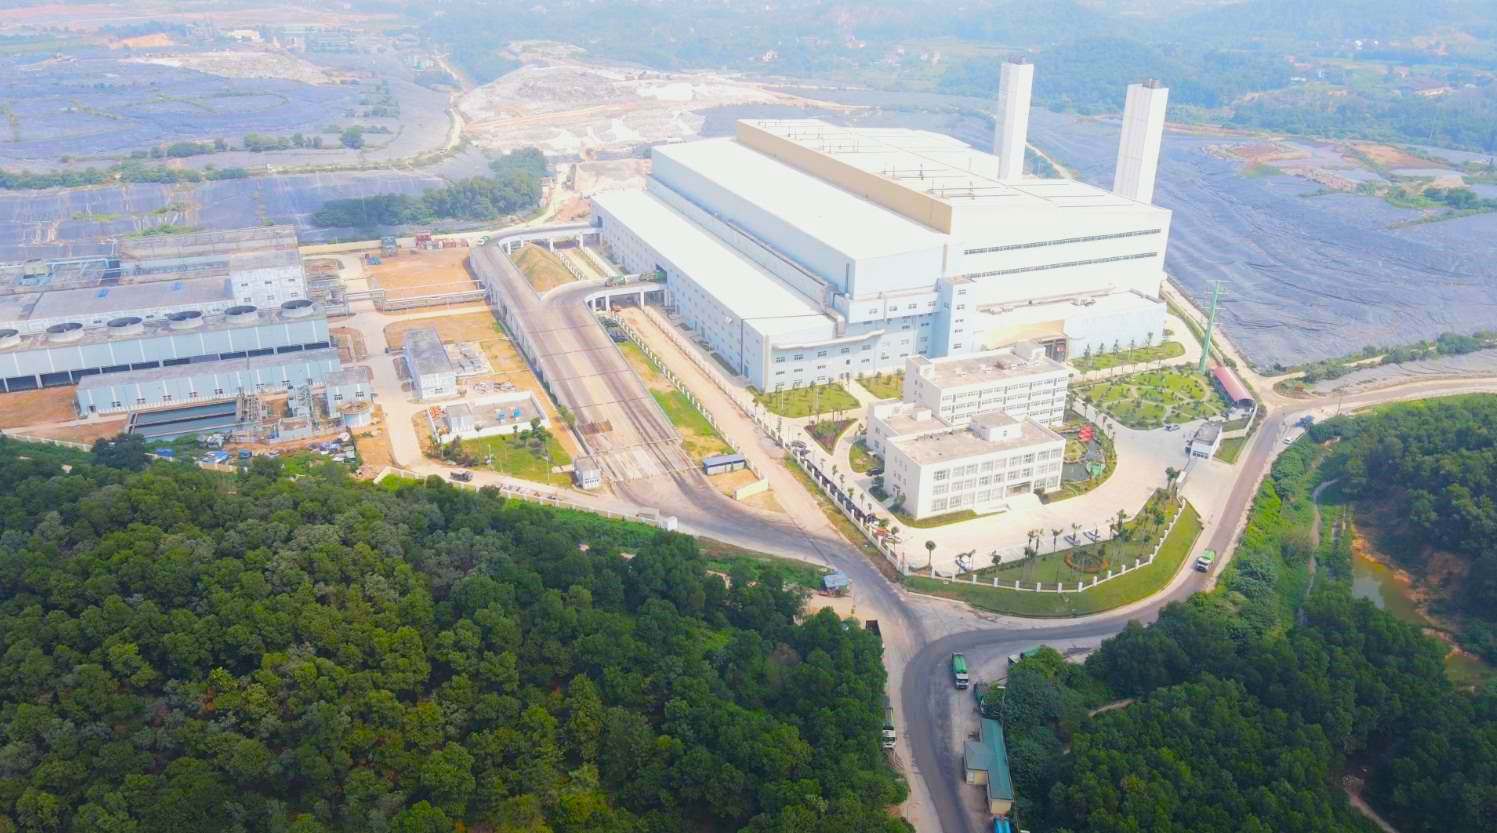 Nhà máy Điện rác Sóc Sơn khởi công tháng 8.2019, trên diện tích 17,51 ha, thuộc Khu liên hợp xử lý chất thải rắn Nam Sơn (huyện Sóc Sơn, Hà Nội) có tổng mức đầu tư hơn 7.000 tỉ đồng.